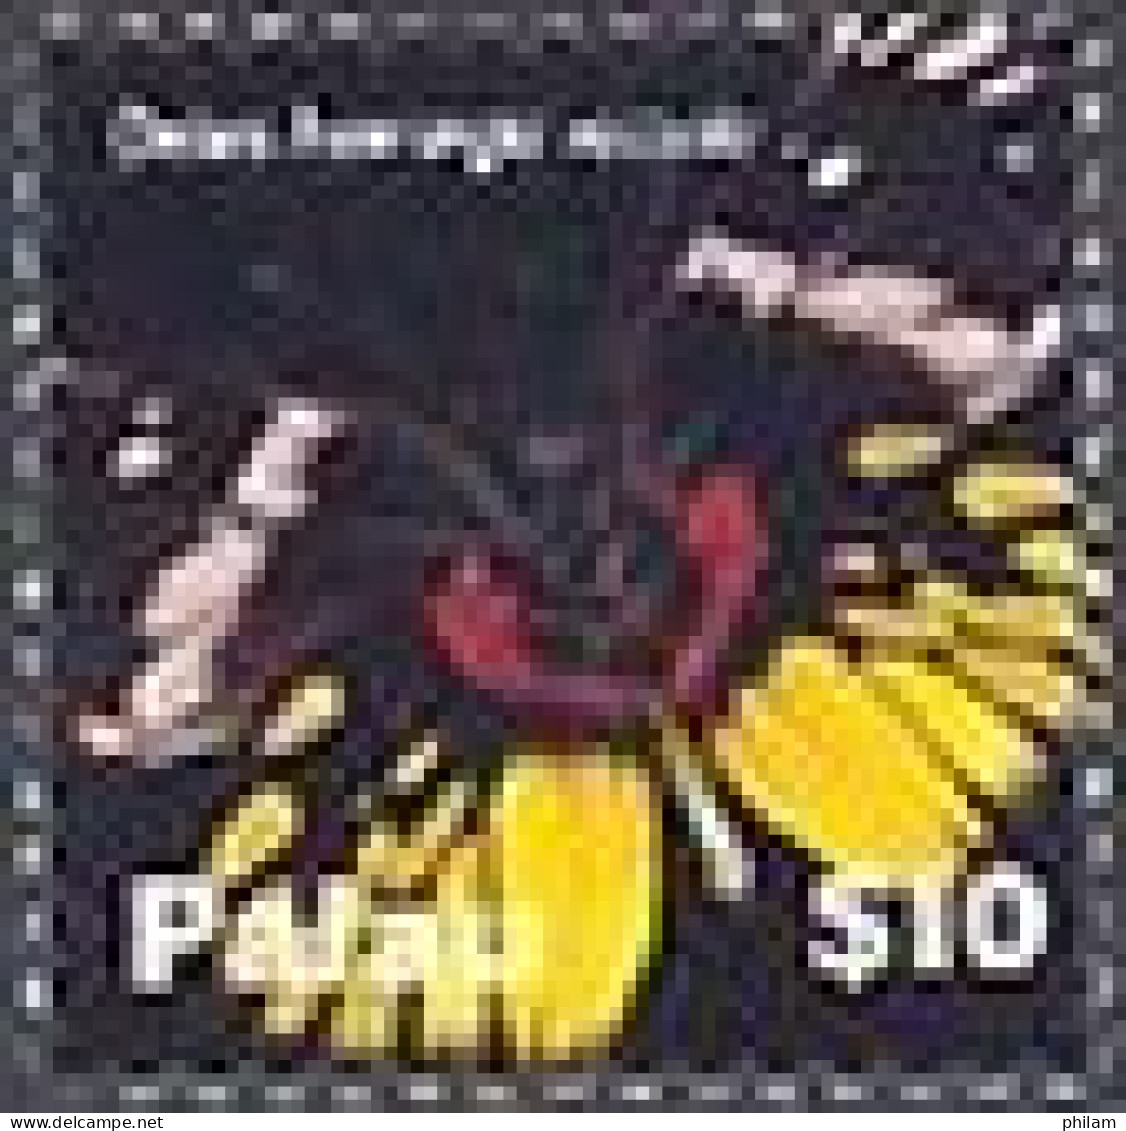 PALAU 2007 - Série Courante - Papillons - Hautes Valeurs - $ 5  Et $ 10 - Schmetterlinge